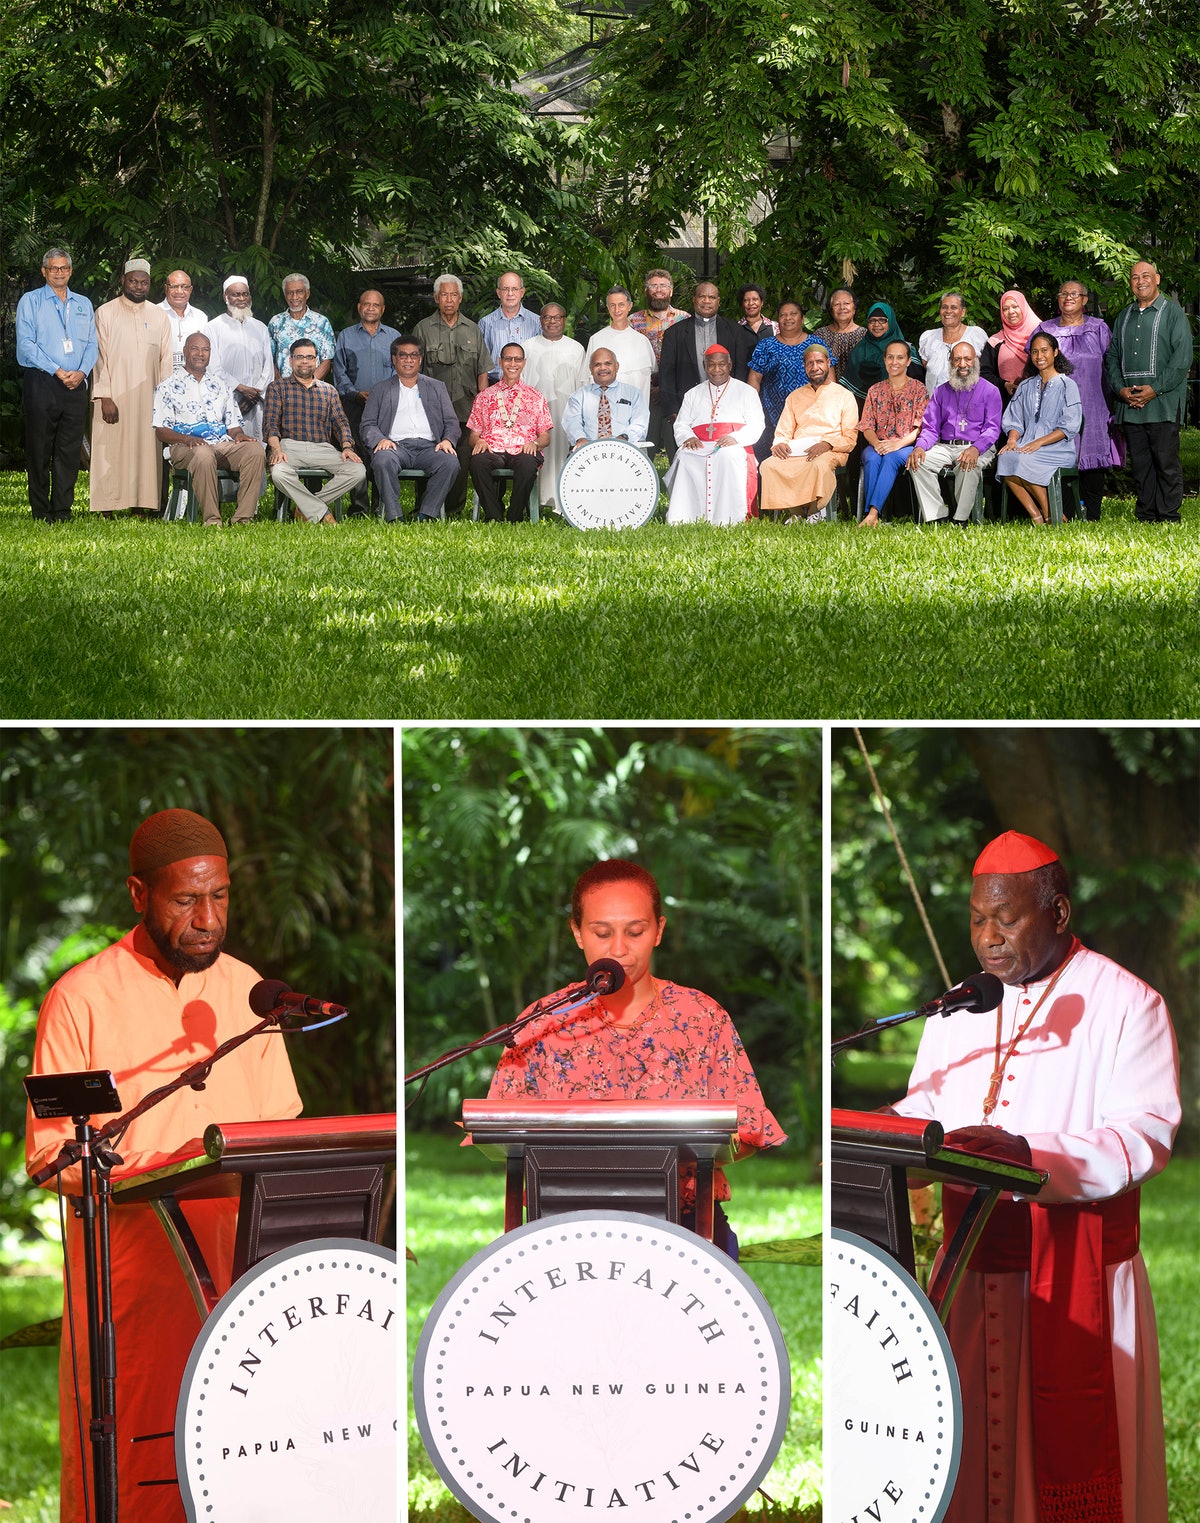 En Papouasie-Nouvelle-Guinée, un événement marquant la Journée mondiale de la religion a rassemblé des communautés religieuses pour une rencontre inédite afin d’ouvrir la voie à une plus grande harmonie dans leur société.